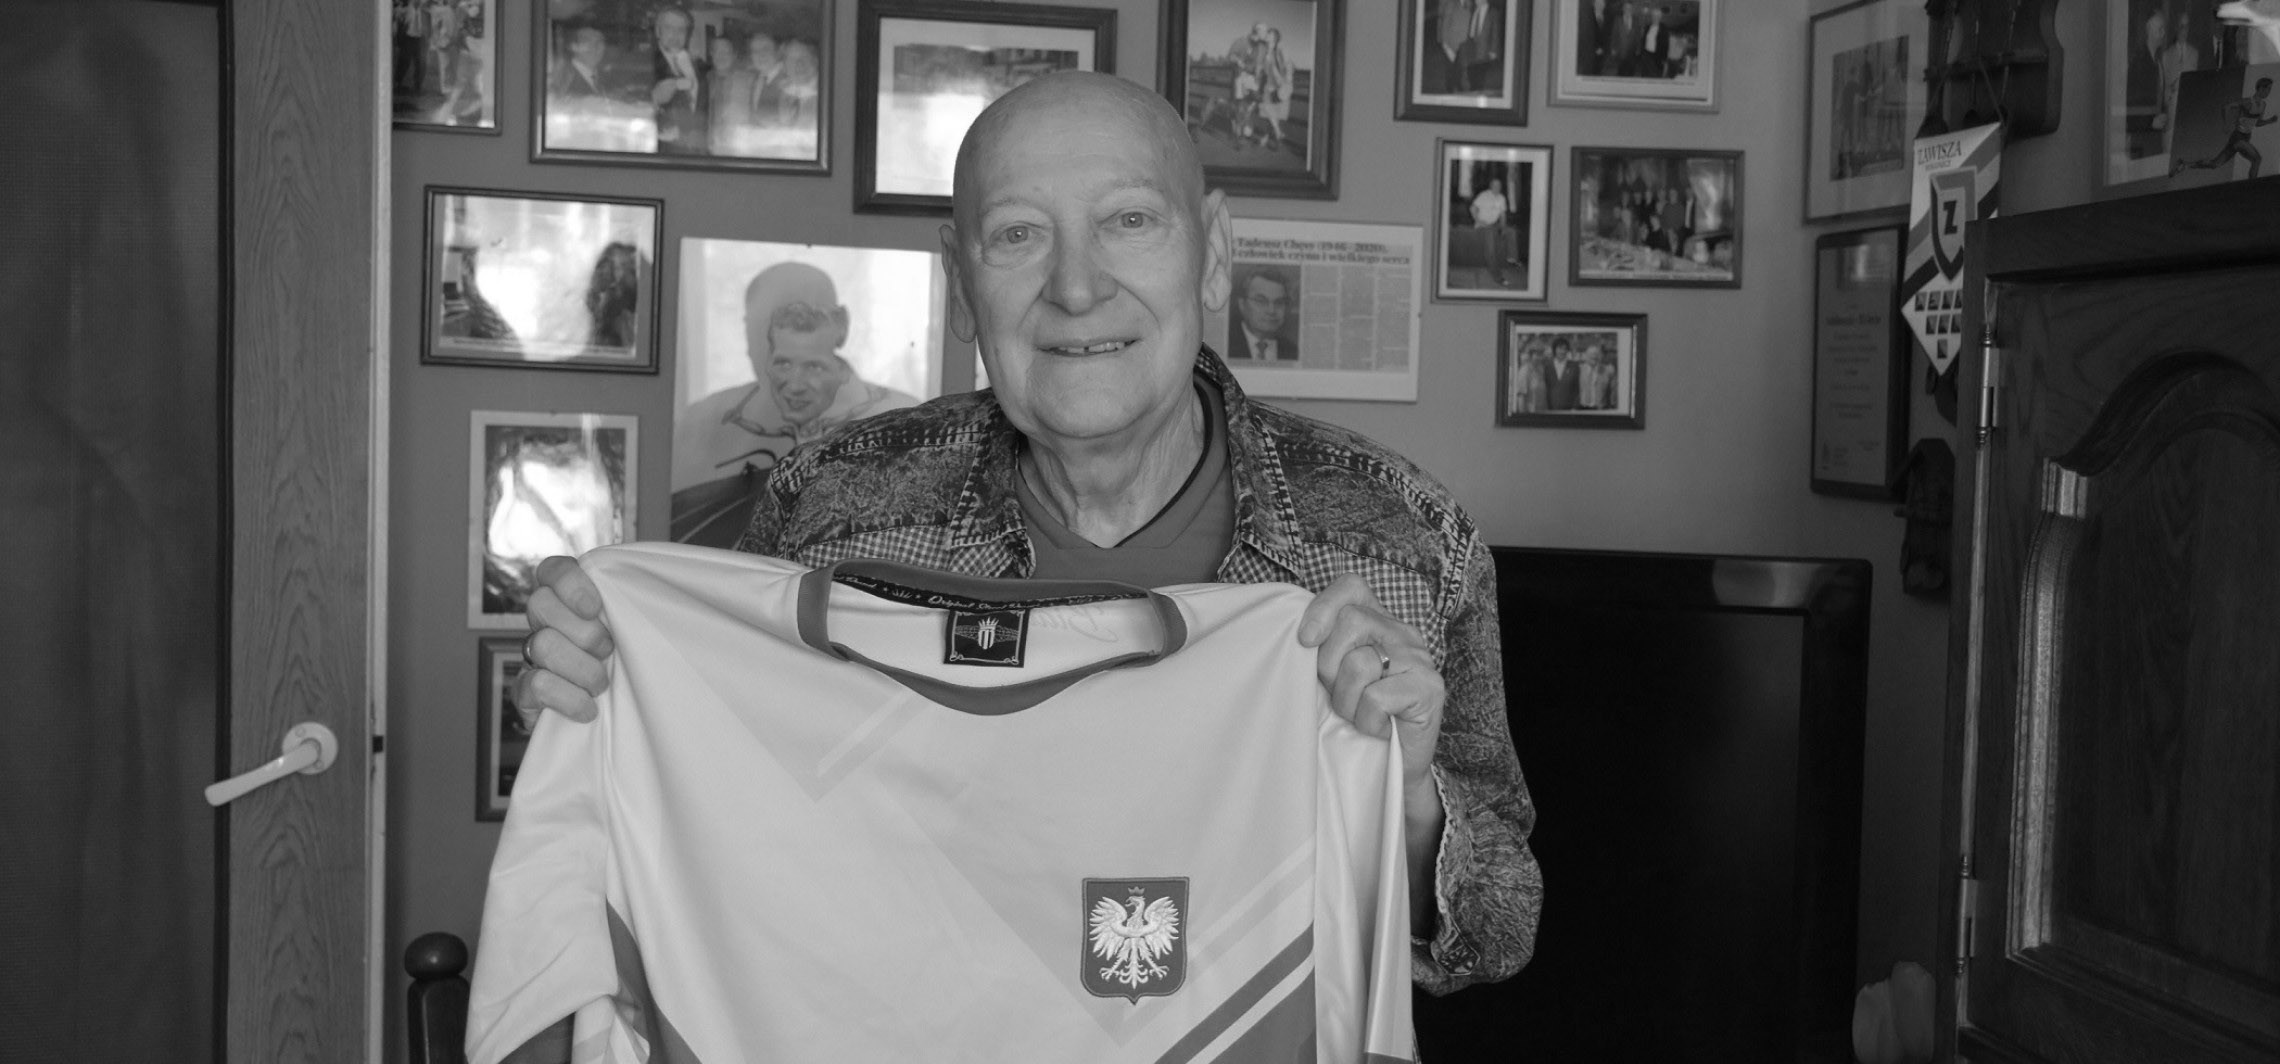 Inowrocław - Zmarł Edmund Borowski, jeden z najwybitniejszych inowrocławskich sportowców